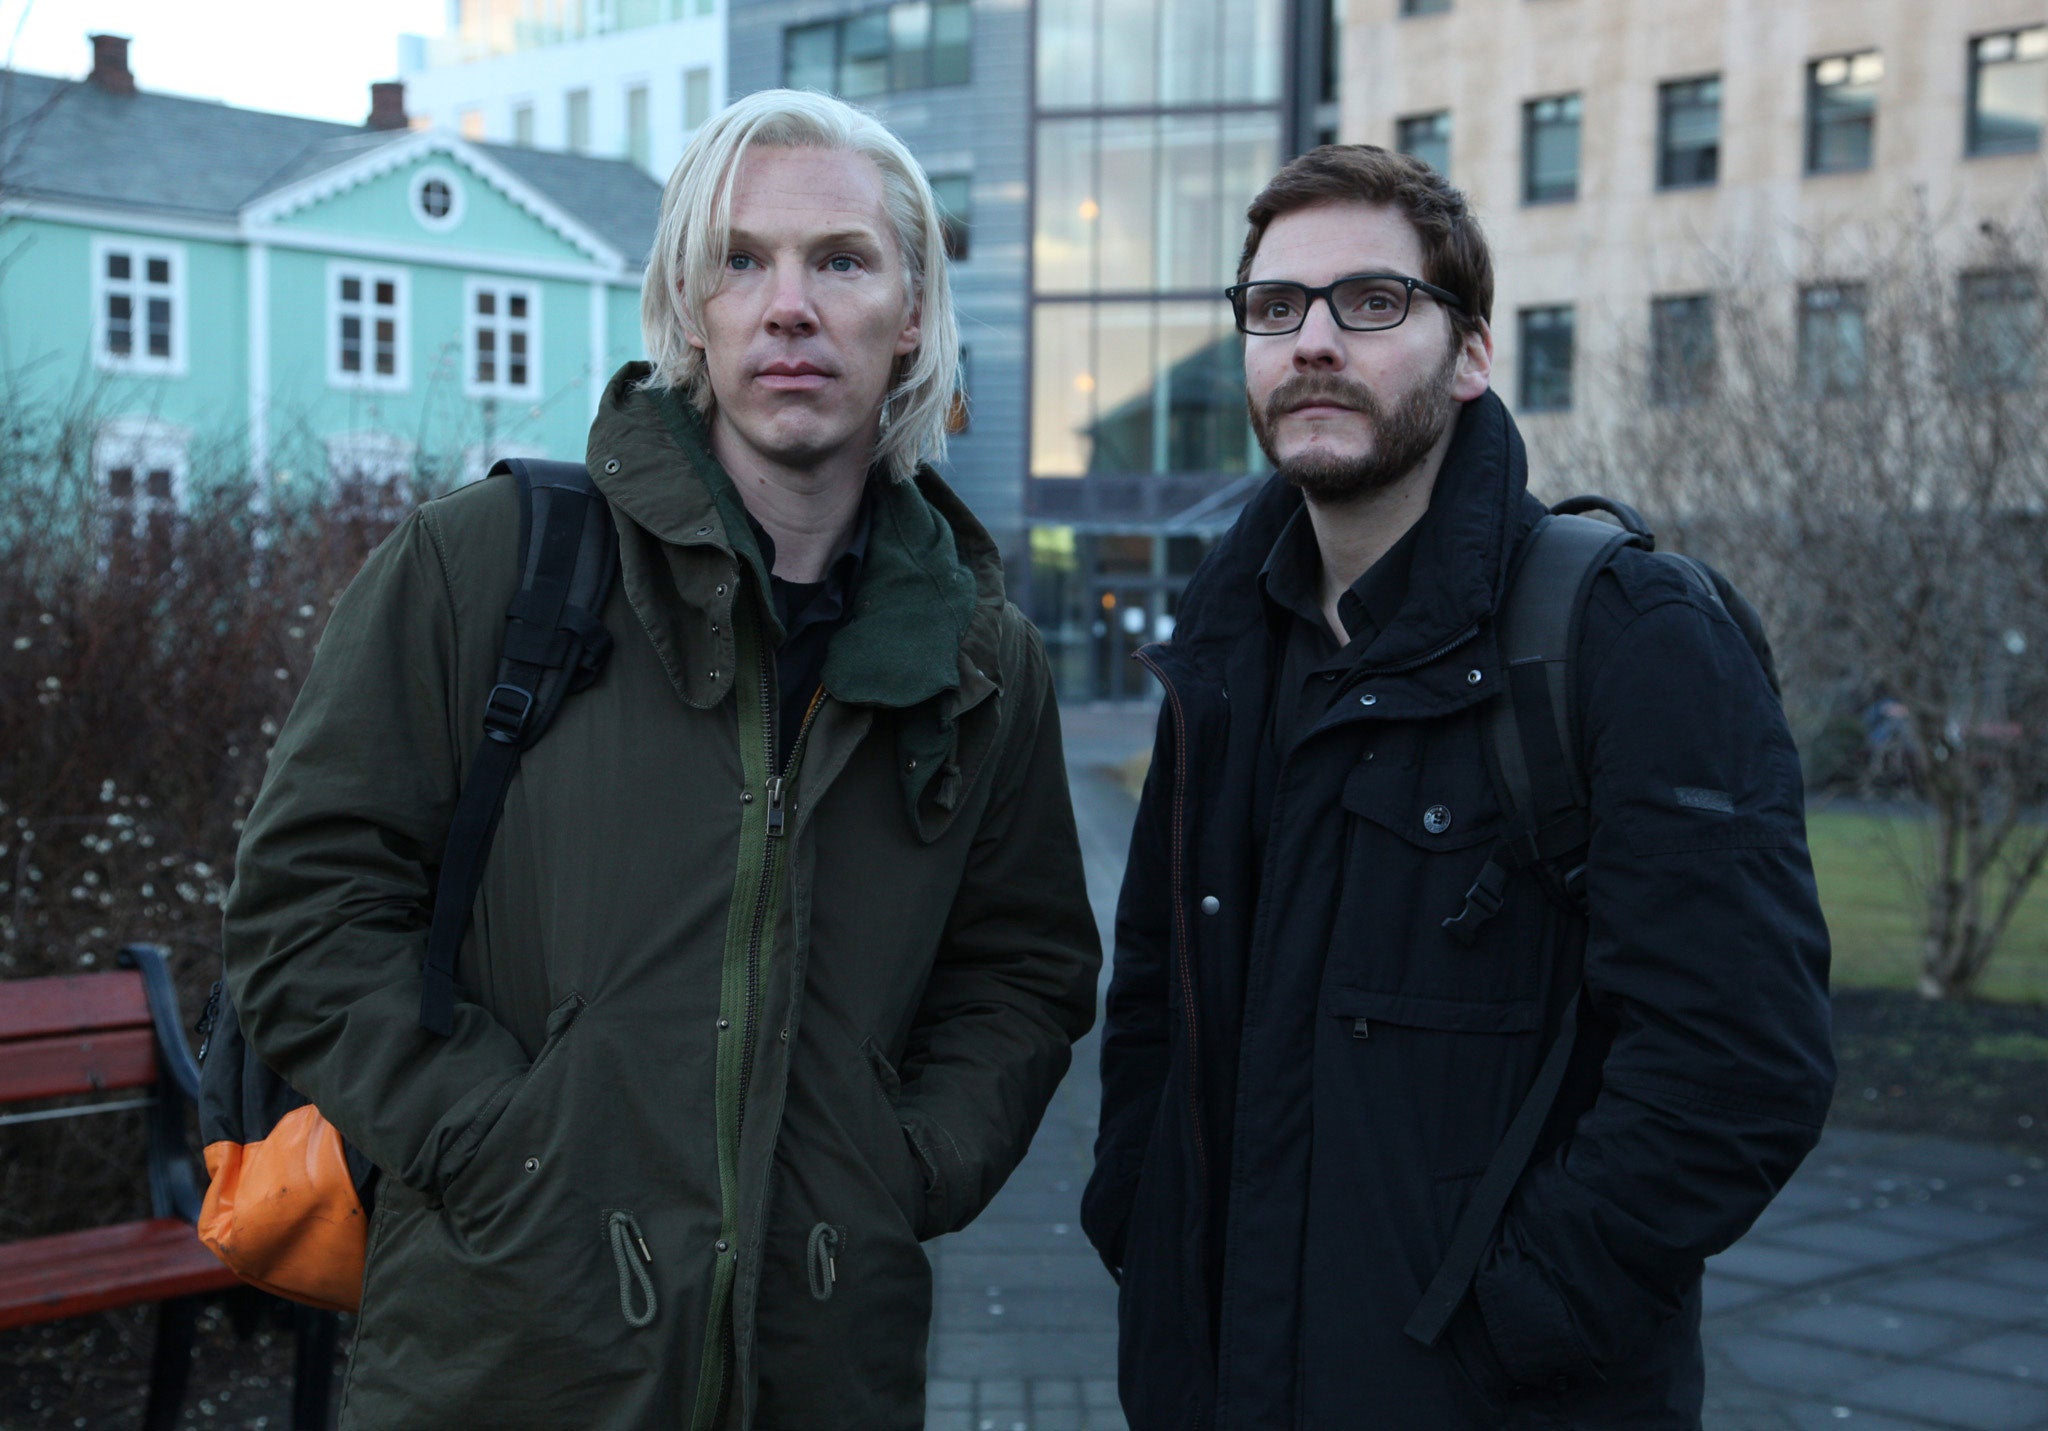 Benedict Cumberbatch as Julian Assange and Daniel Bruhl as Daniel Domscheit-Berg in The Fifth Estate